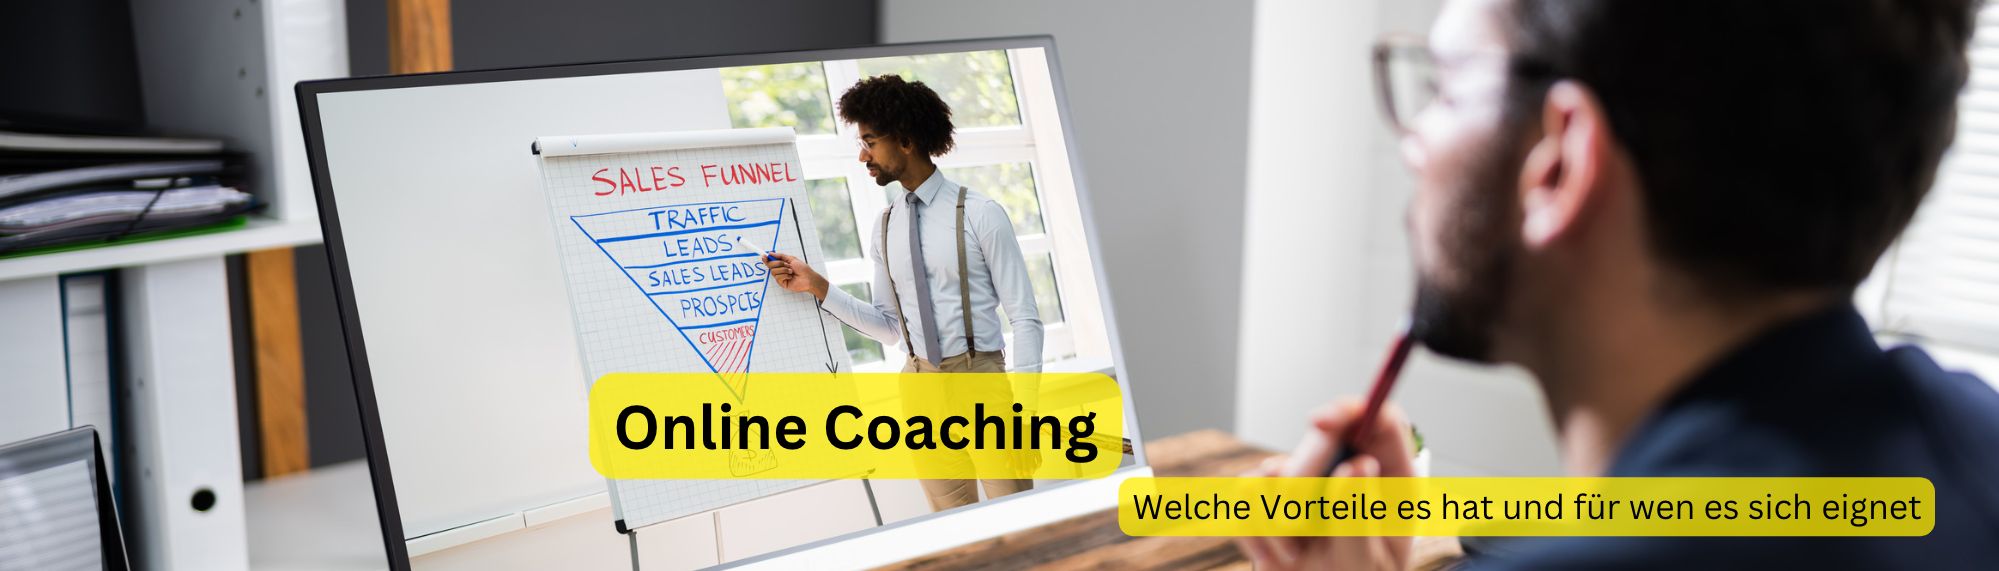 Online Coaching - Welche Vorteile es hat und für wen es sich eignet